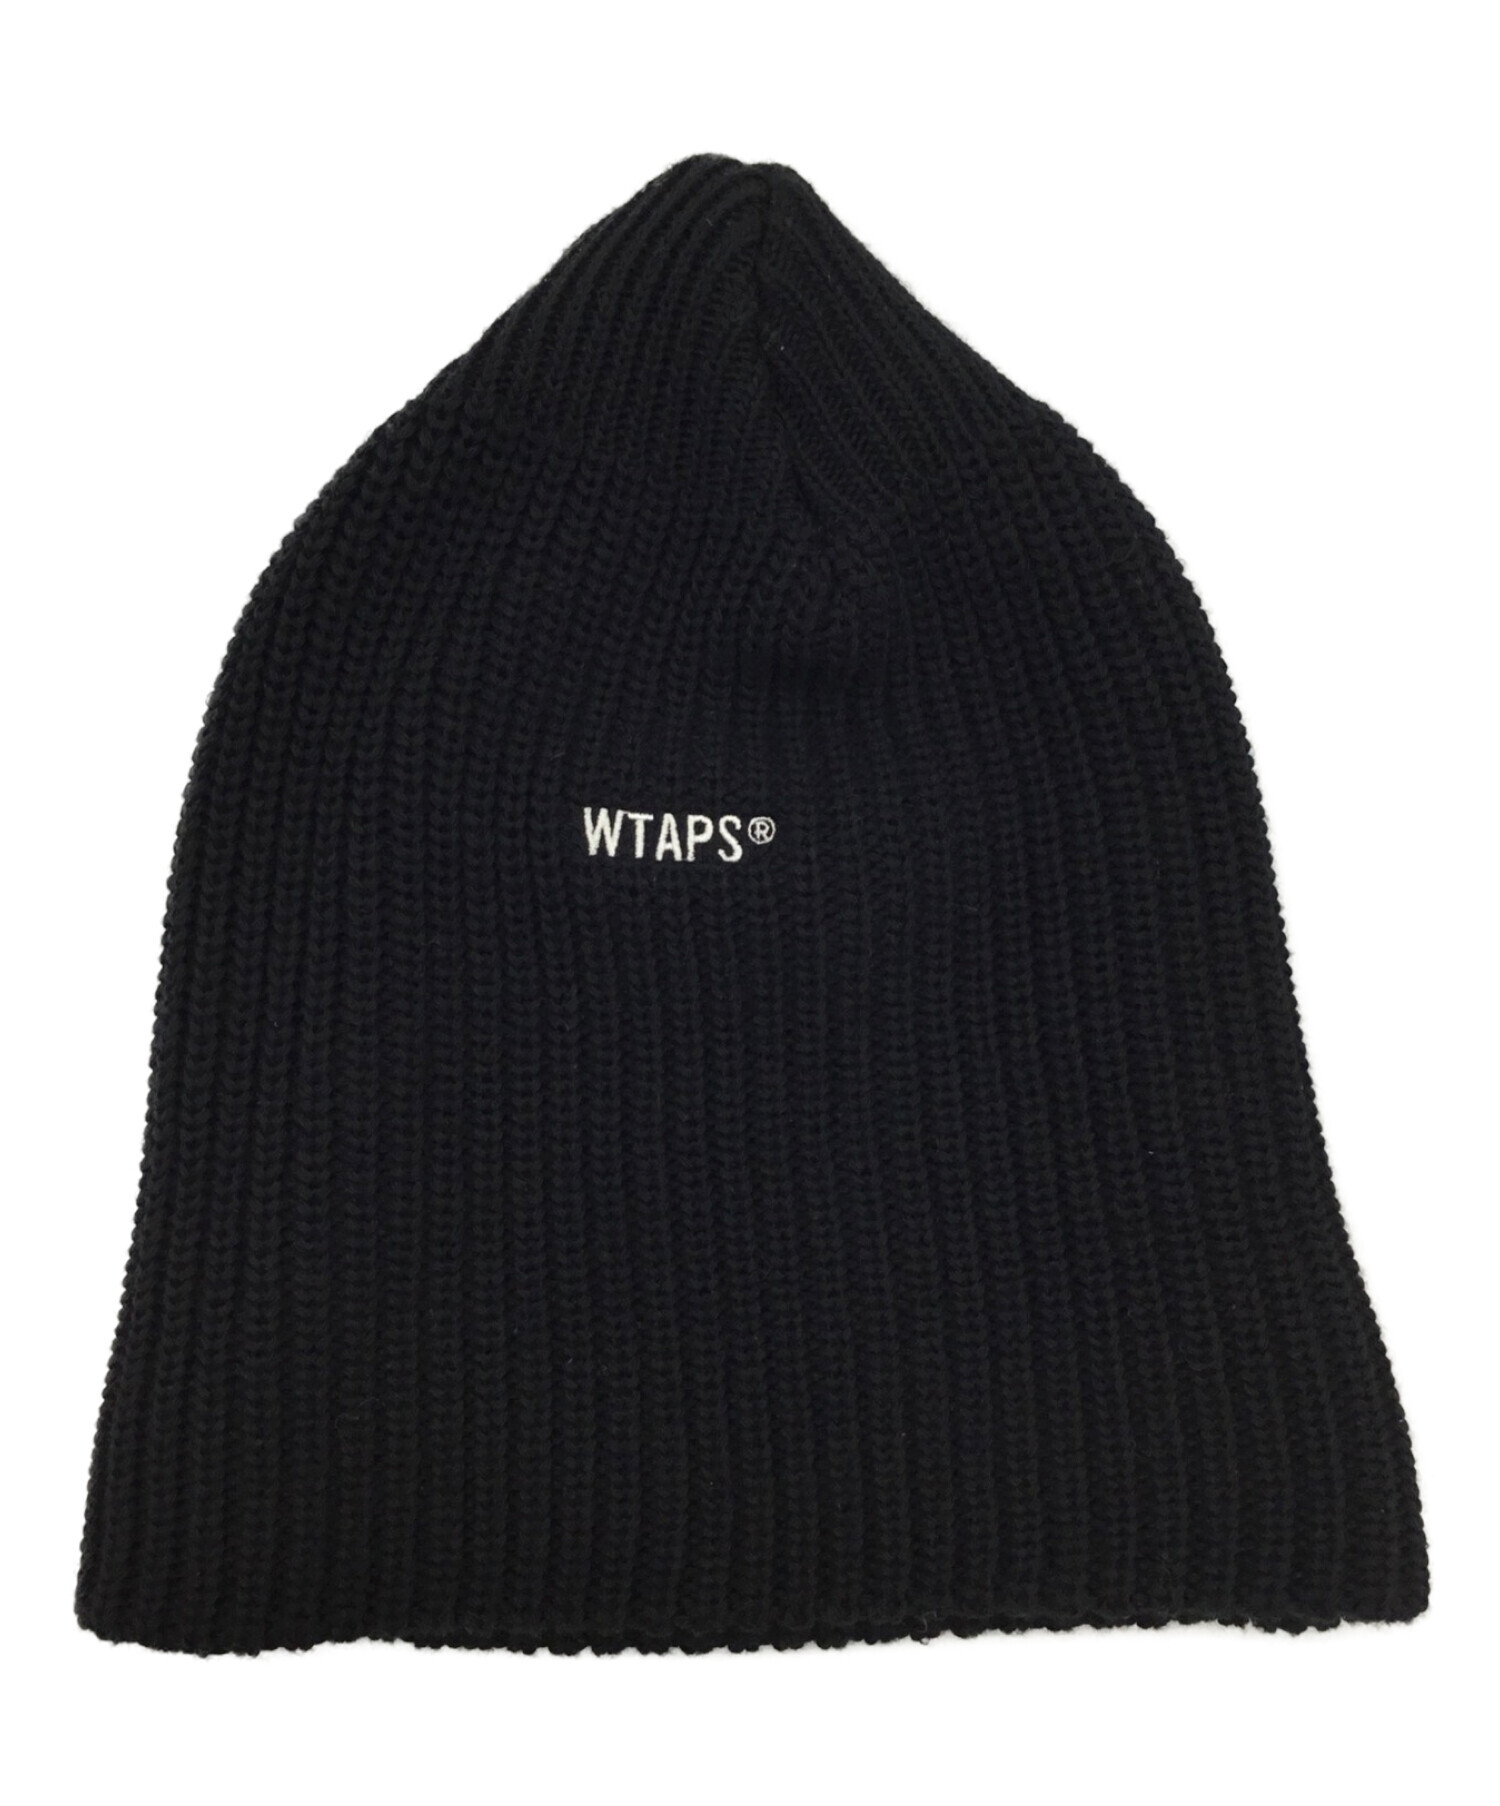 WTAPS (ダブルタップス) ニット帽 ブラック サイズ:-